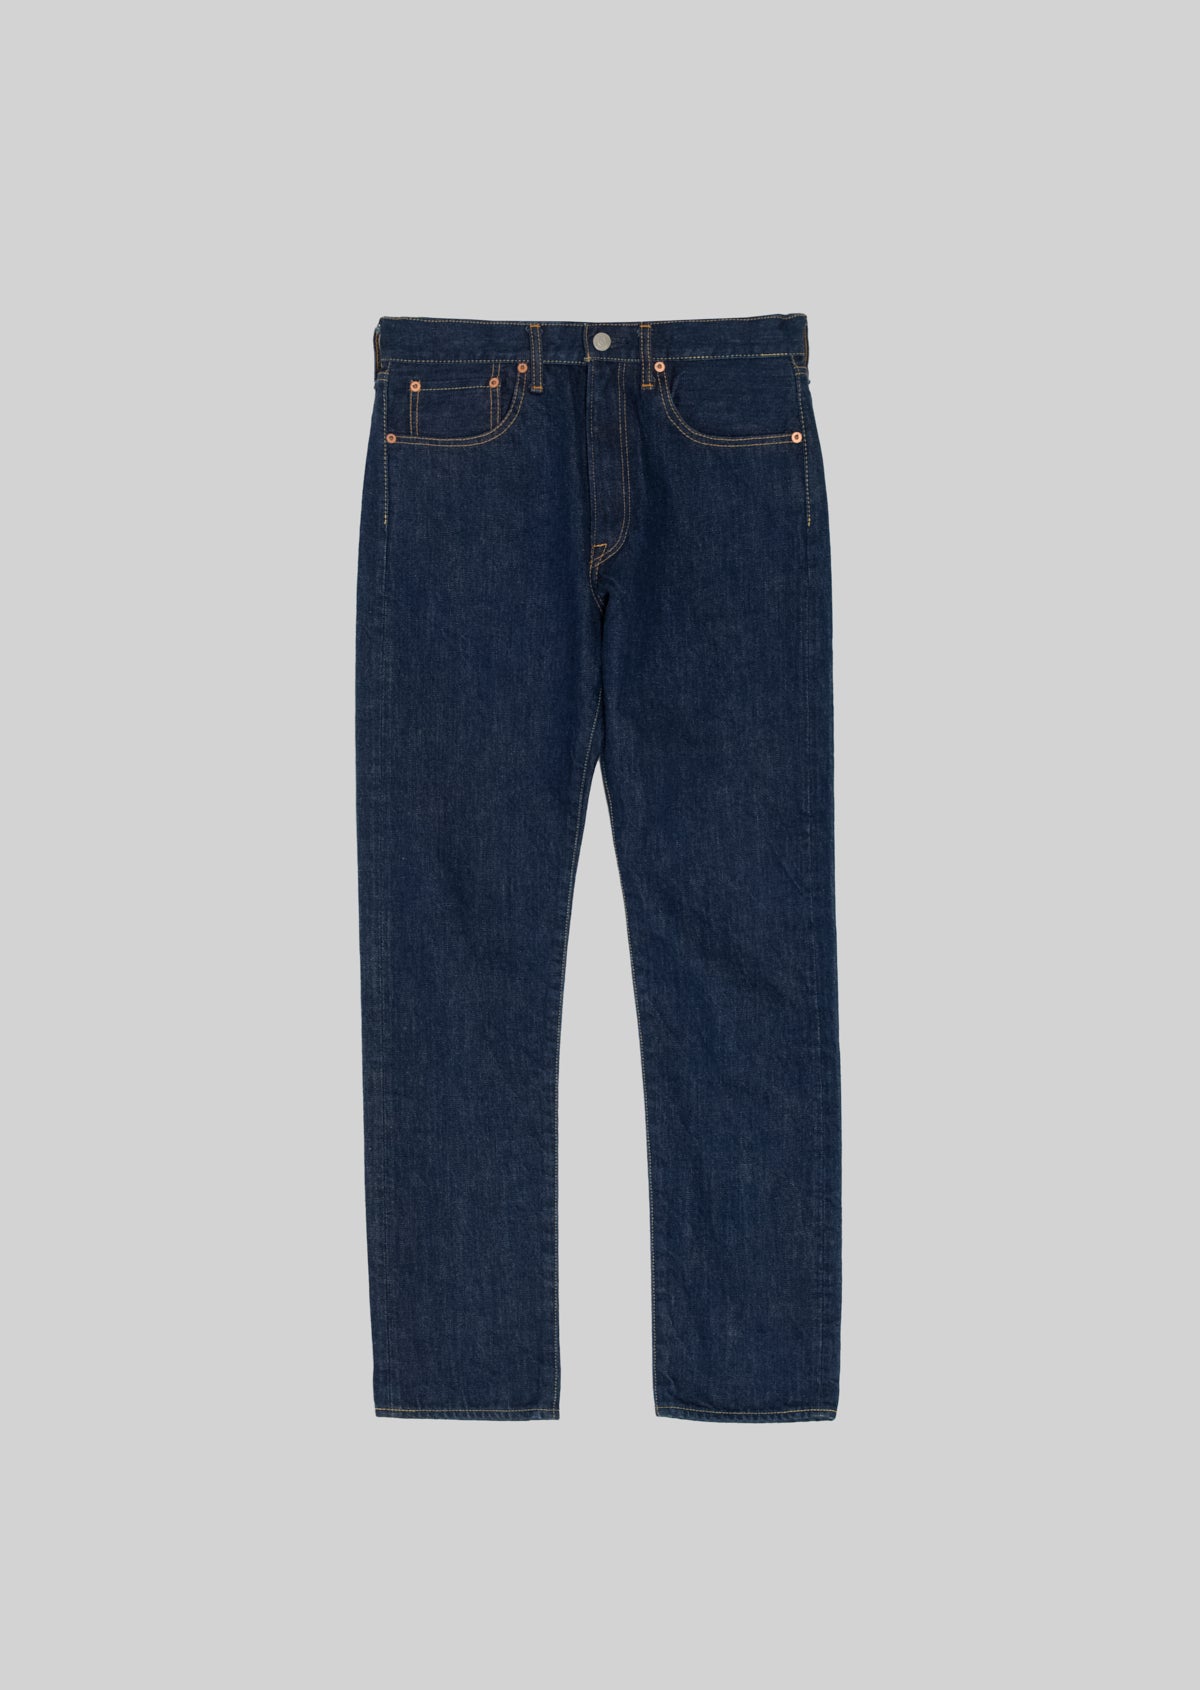 HANDROOM／ 5 Pocket Jeans Slim Fit